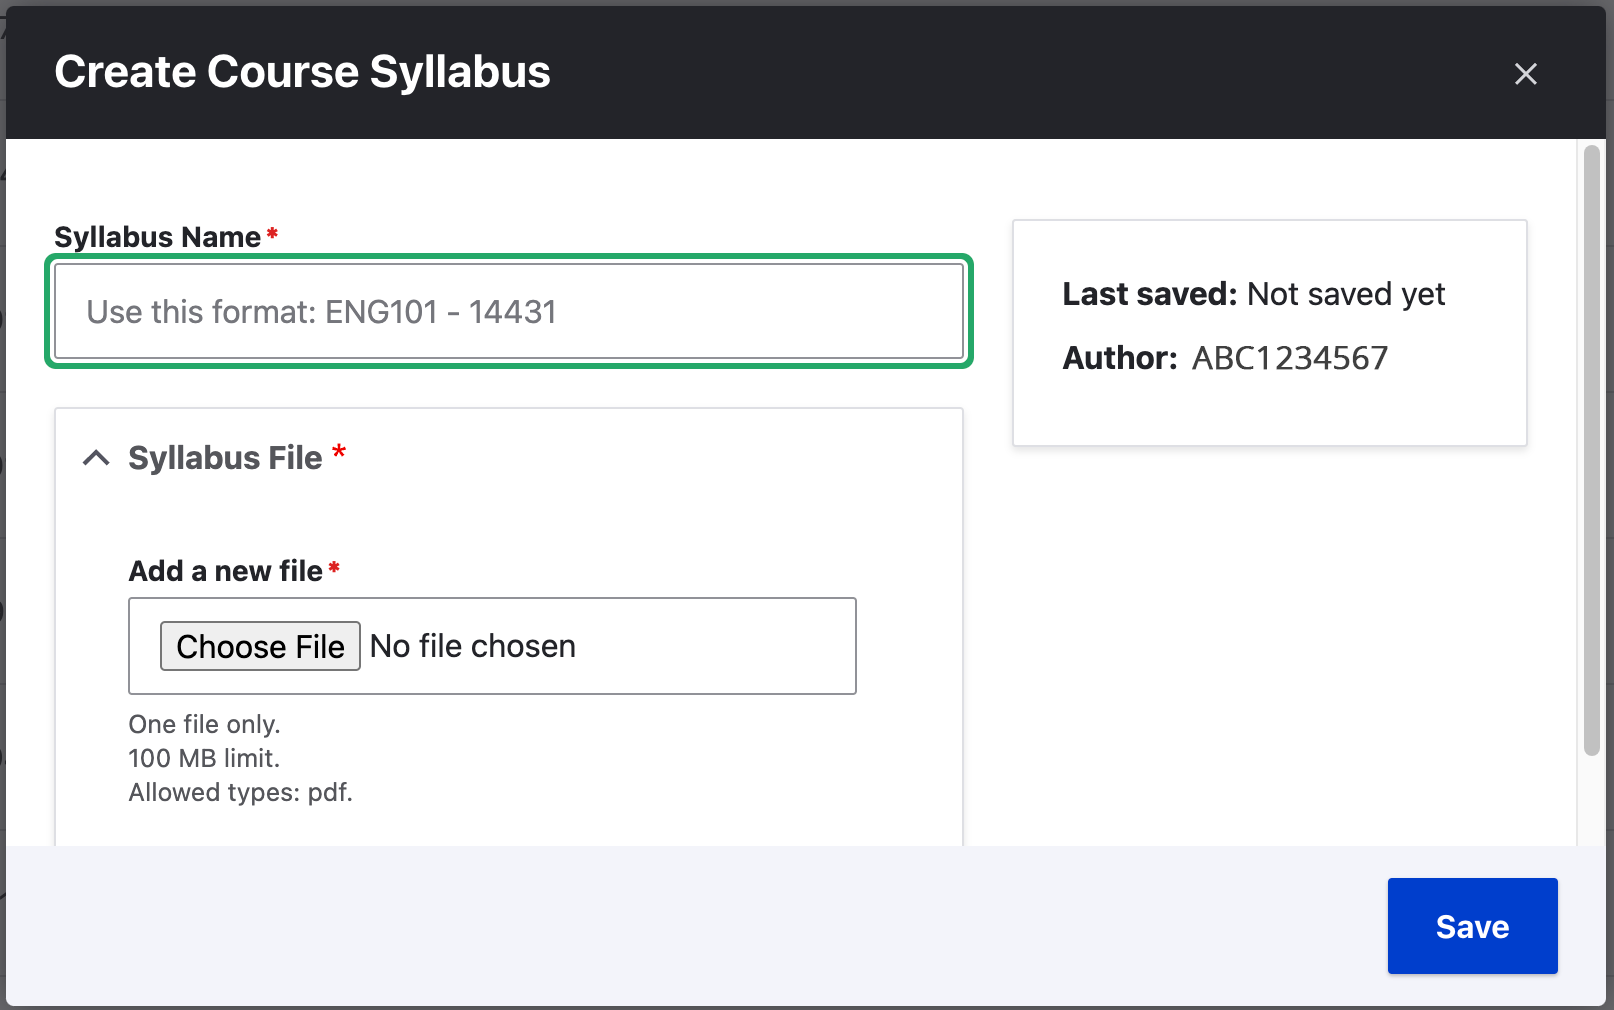 Create course syllabus screen